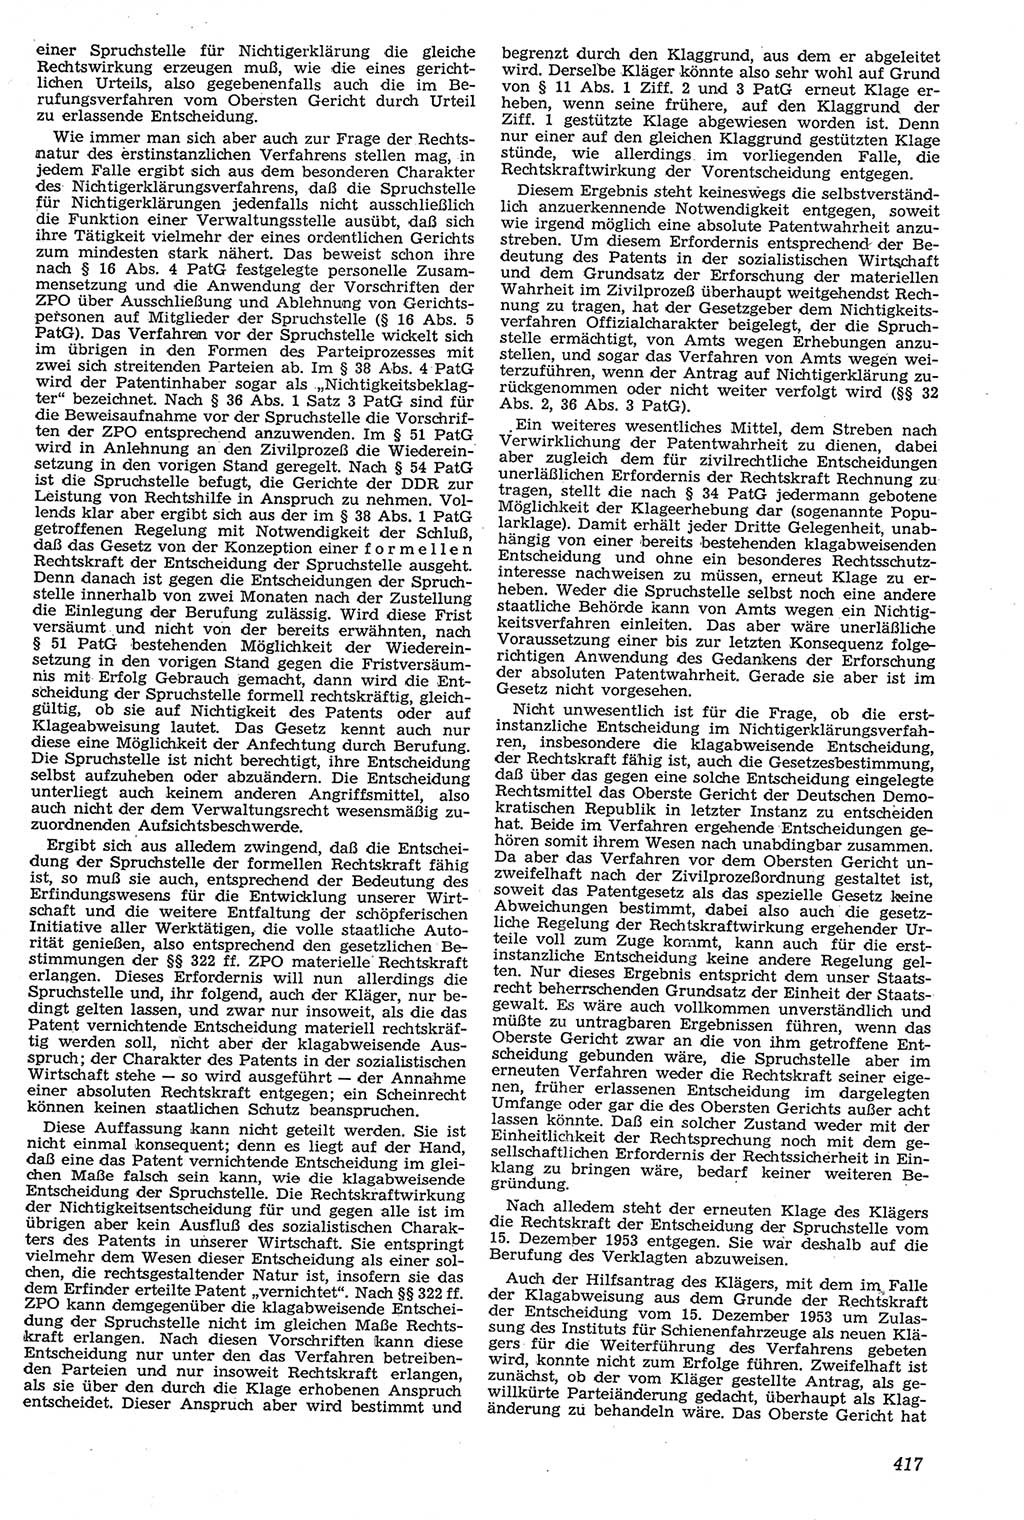 Neue Justiz (NJ), Zeitschrift für Recht und Rechtswissenschaft [Deutsche Demokratische Republik (DDR)], 11. Jahrgang 1957, Seite 417 (NJ DDR 1957, S. 417)